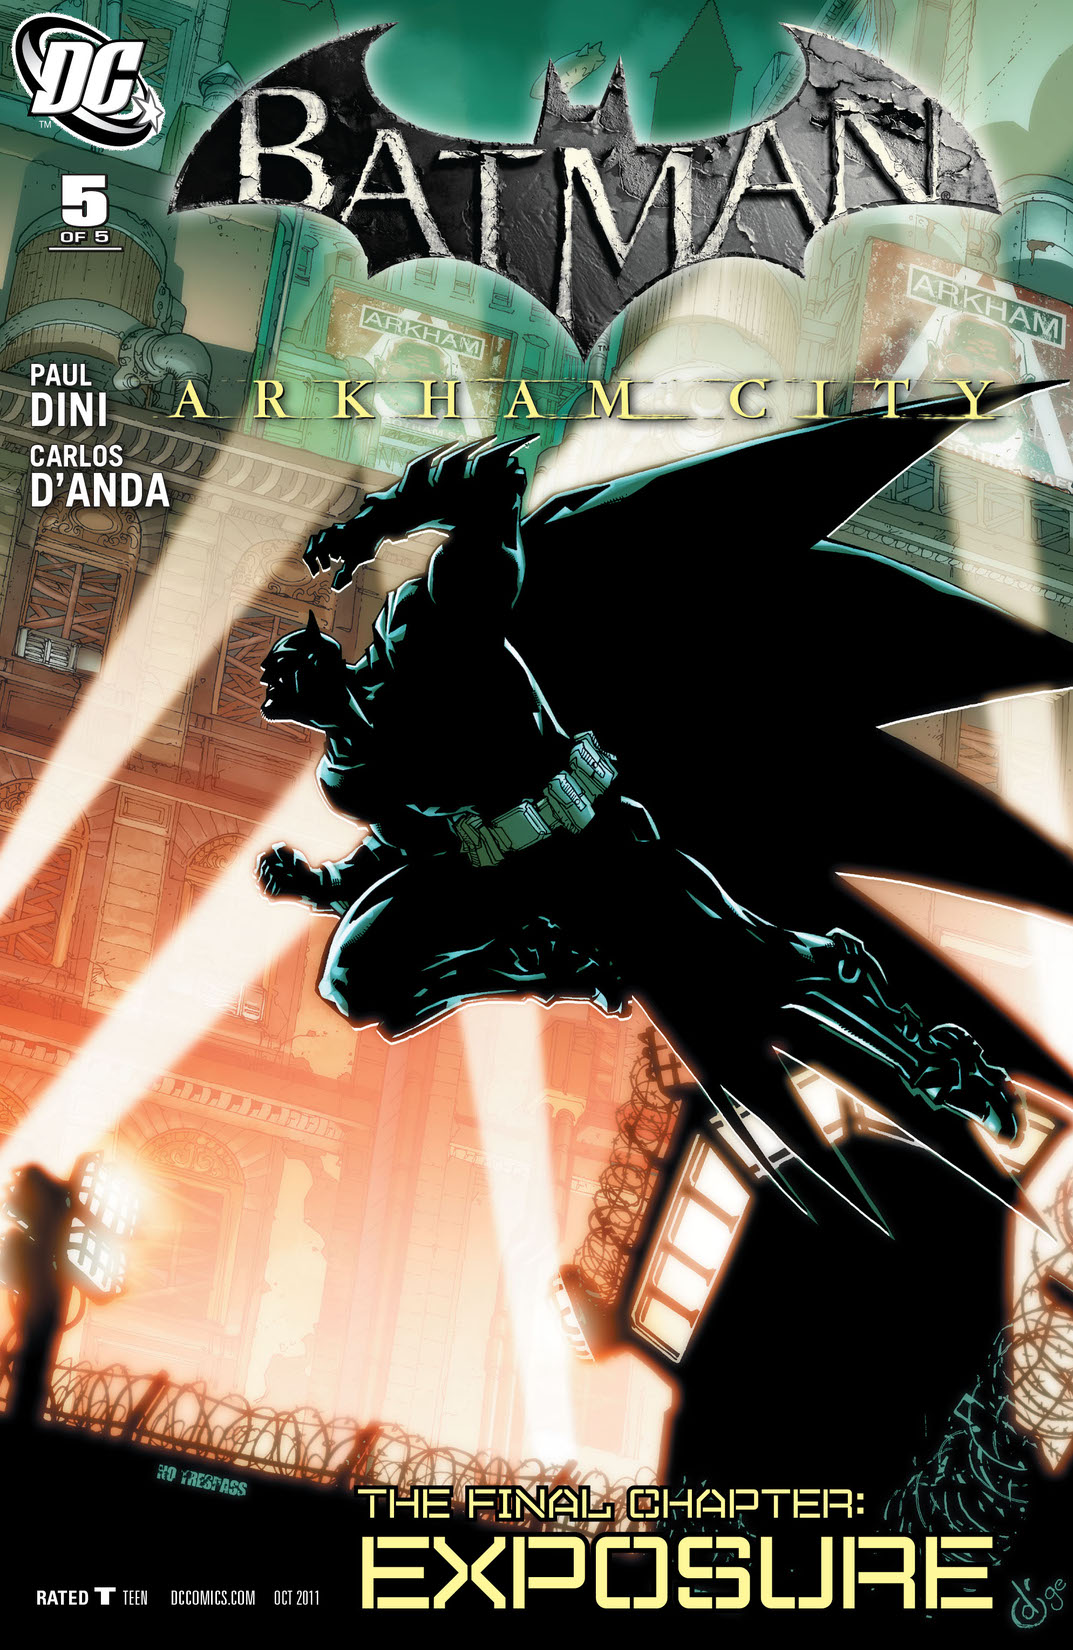 Batman: Arkham City #5 preview images